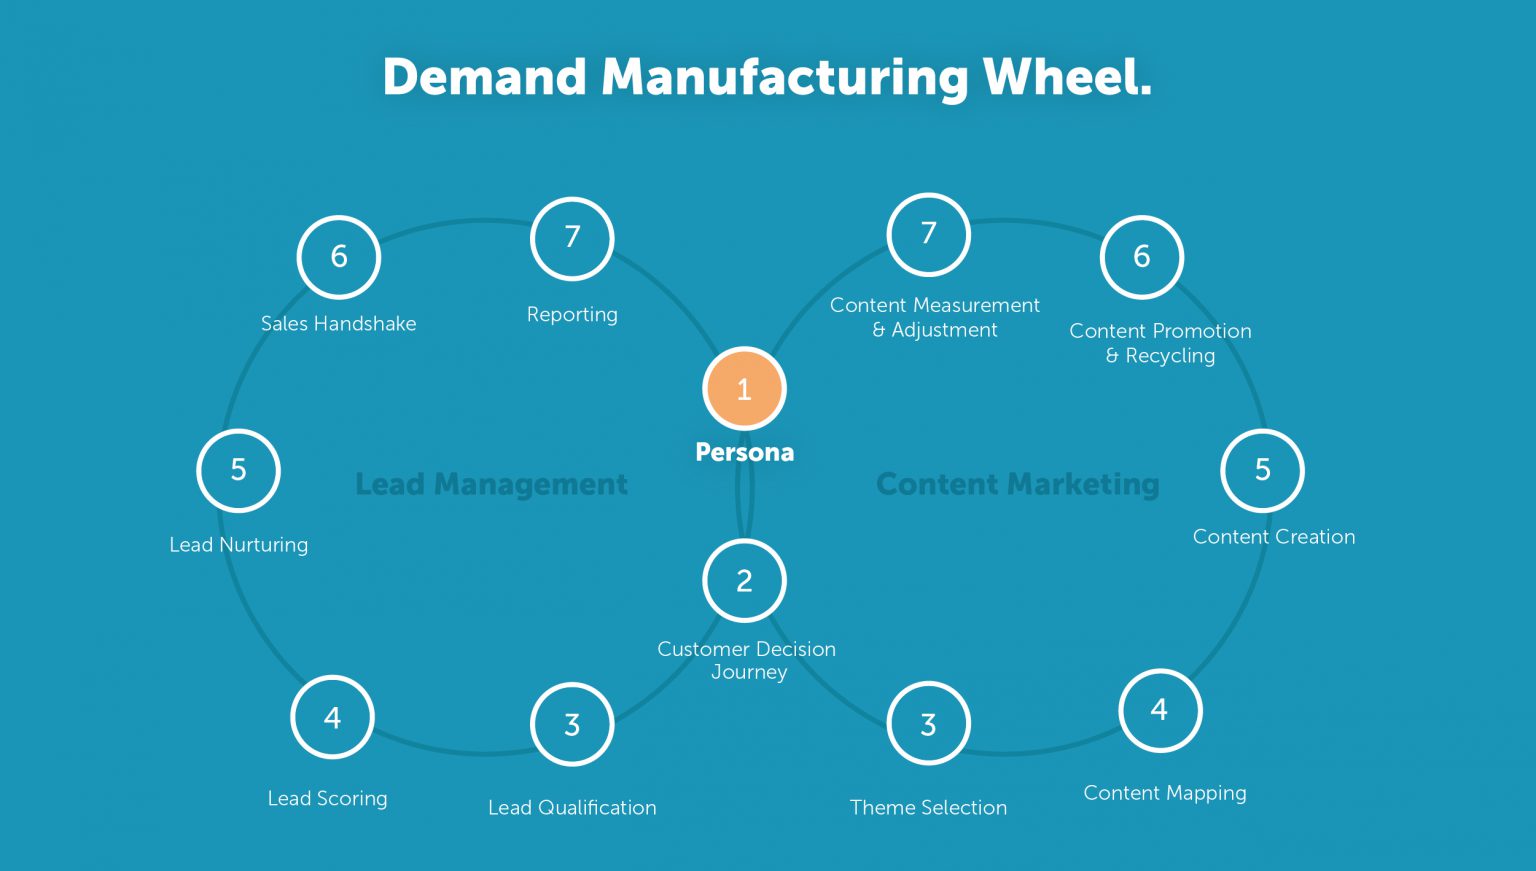 Demand Manufacturing Wheel